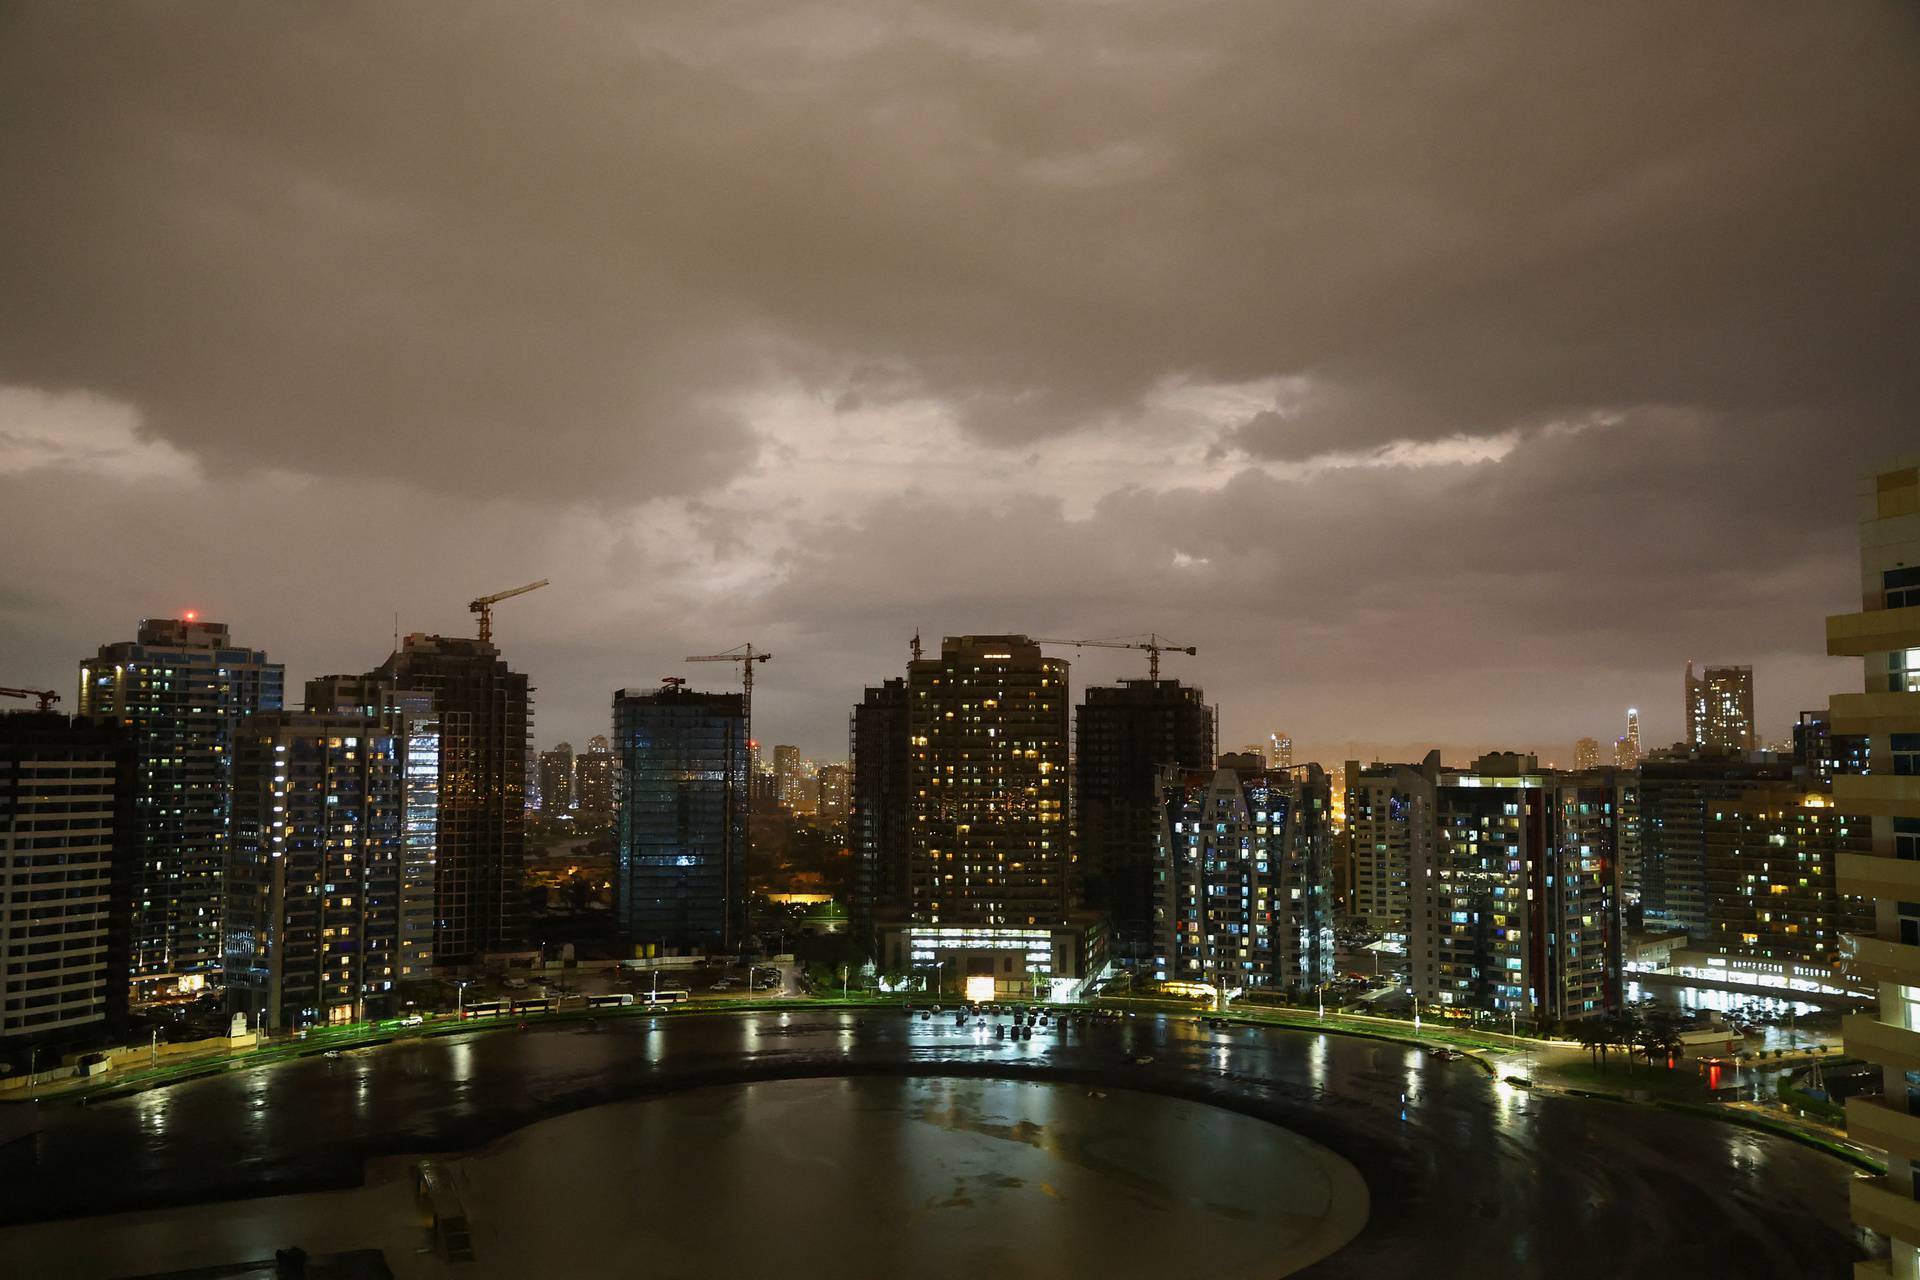 Heavy rains over Dubai